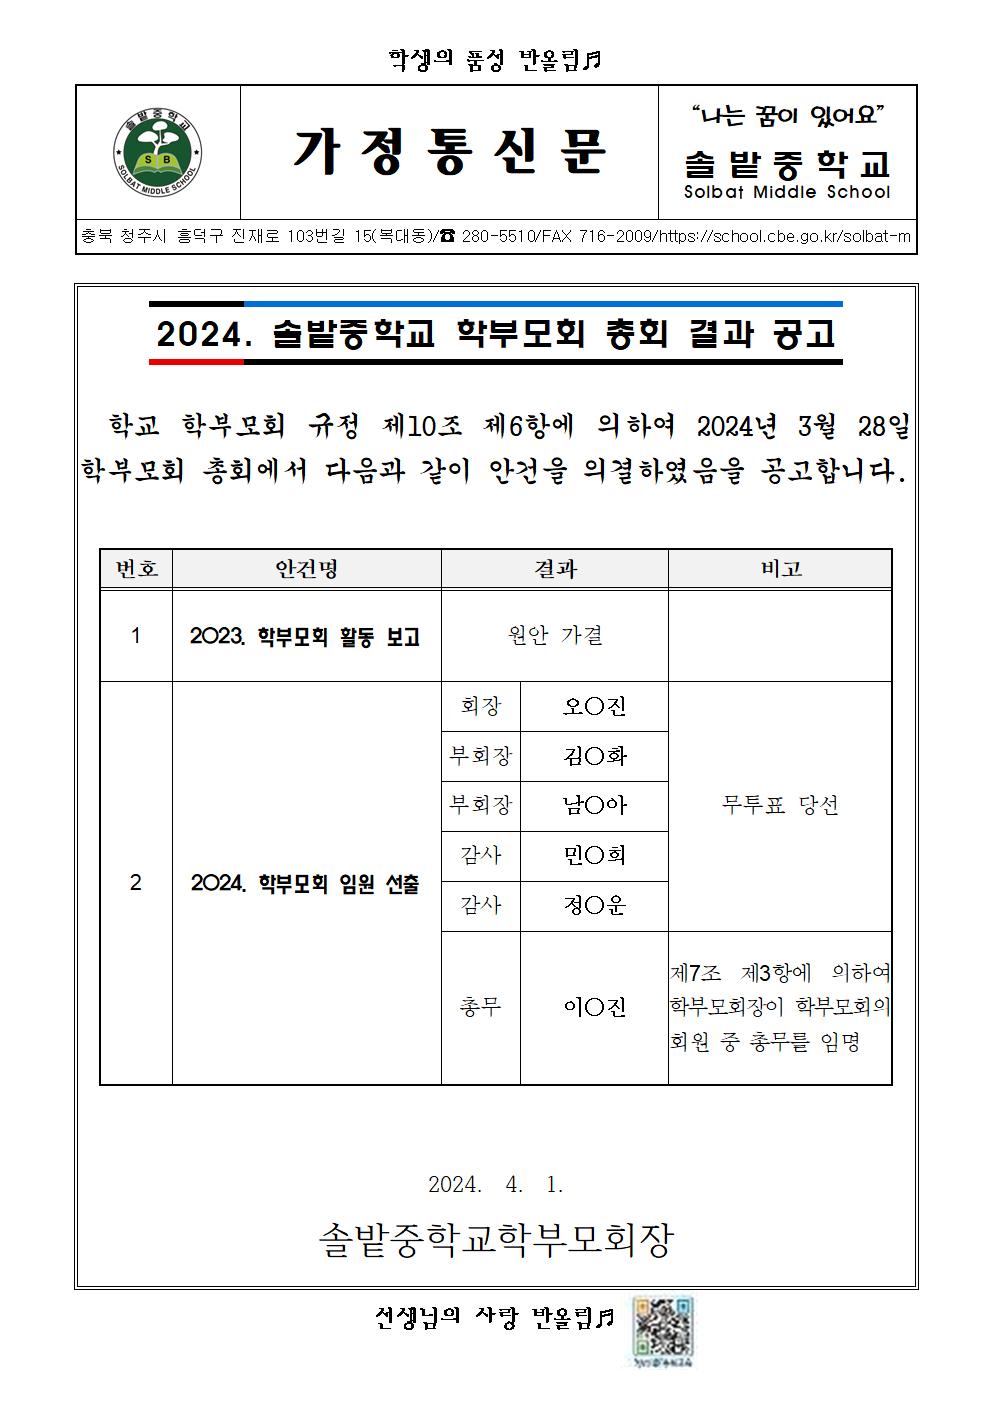 2024. 솔밭중학교 학부모회 총회 결과 공고 가정통신문001